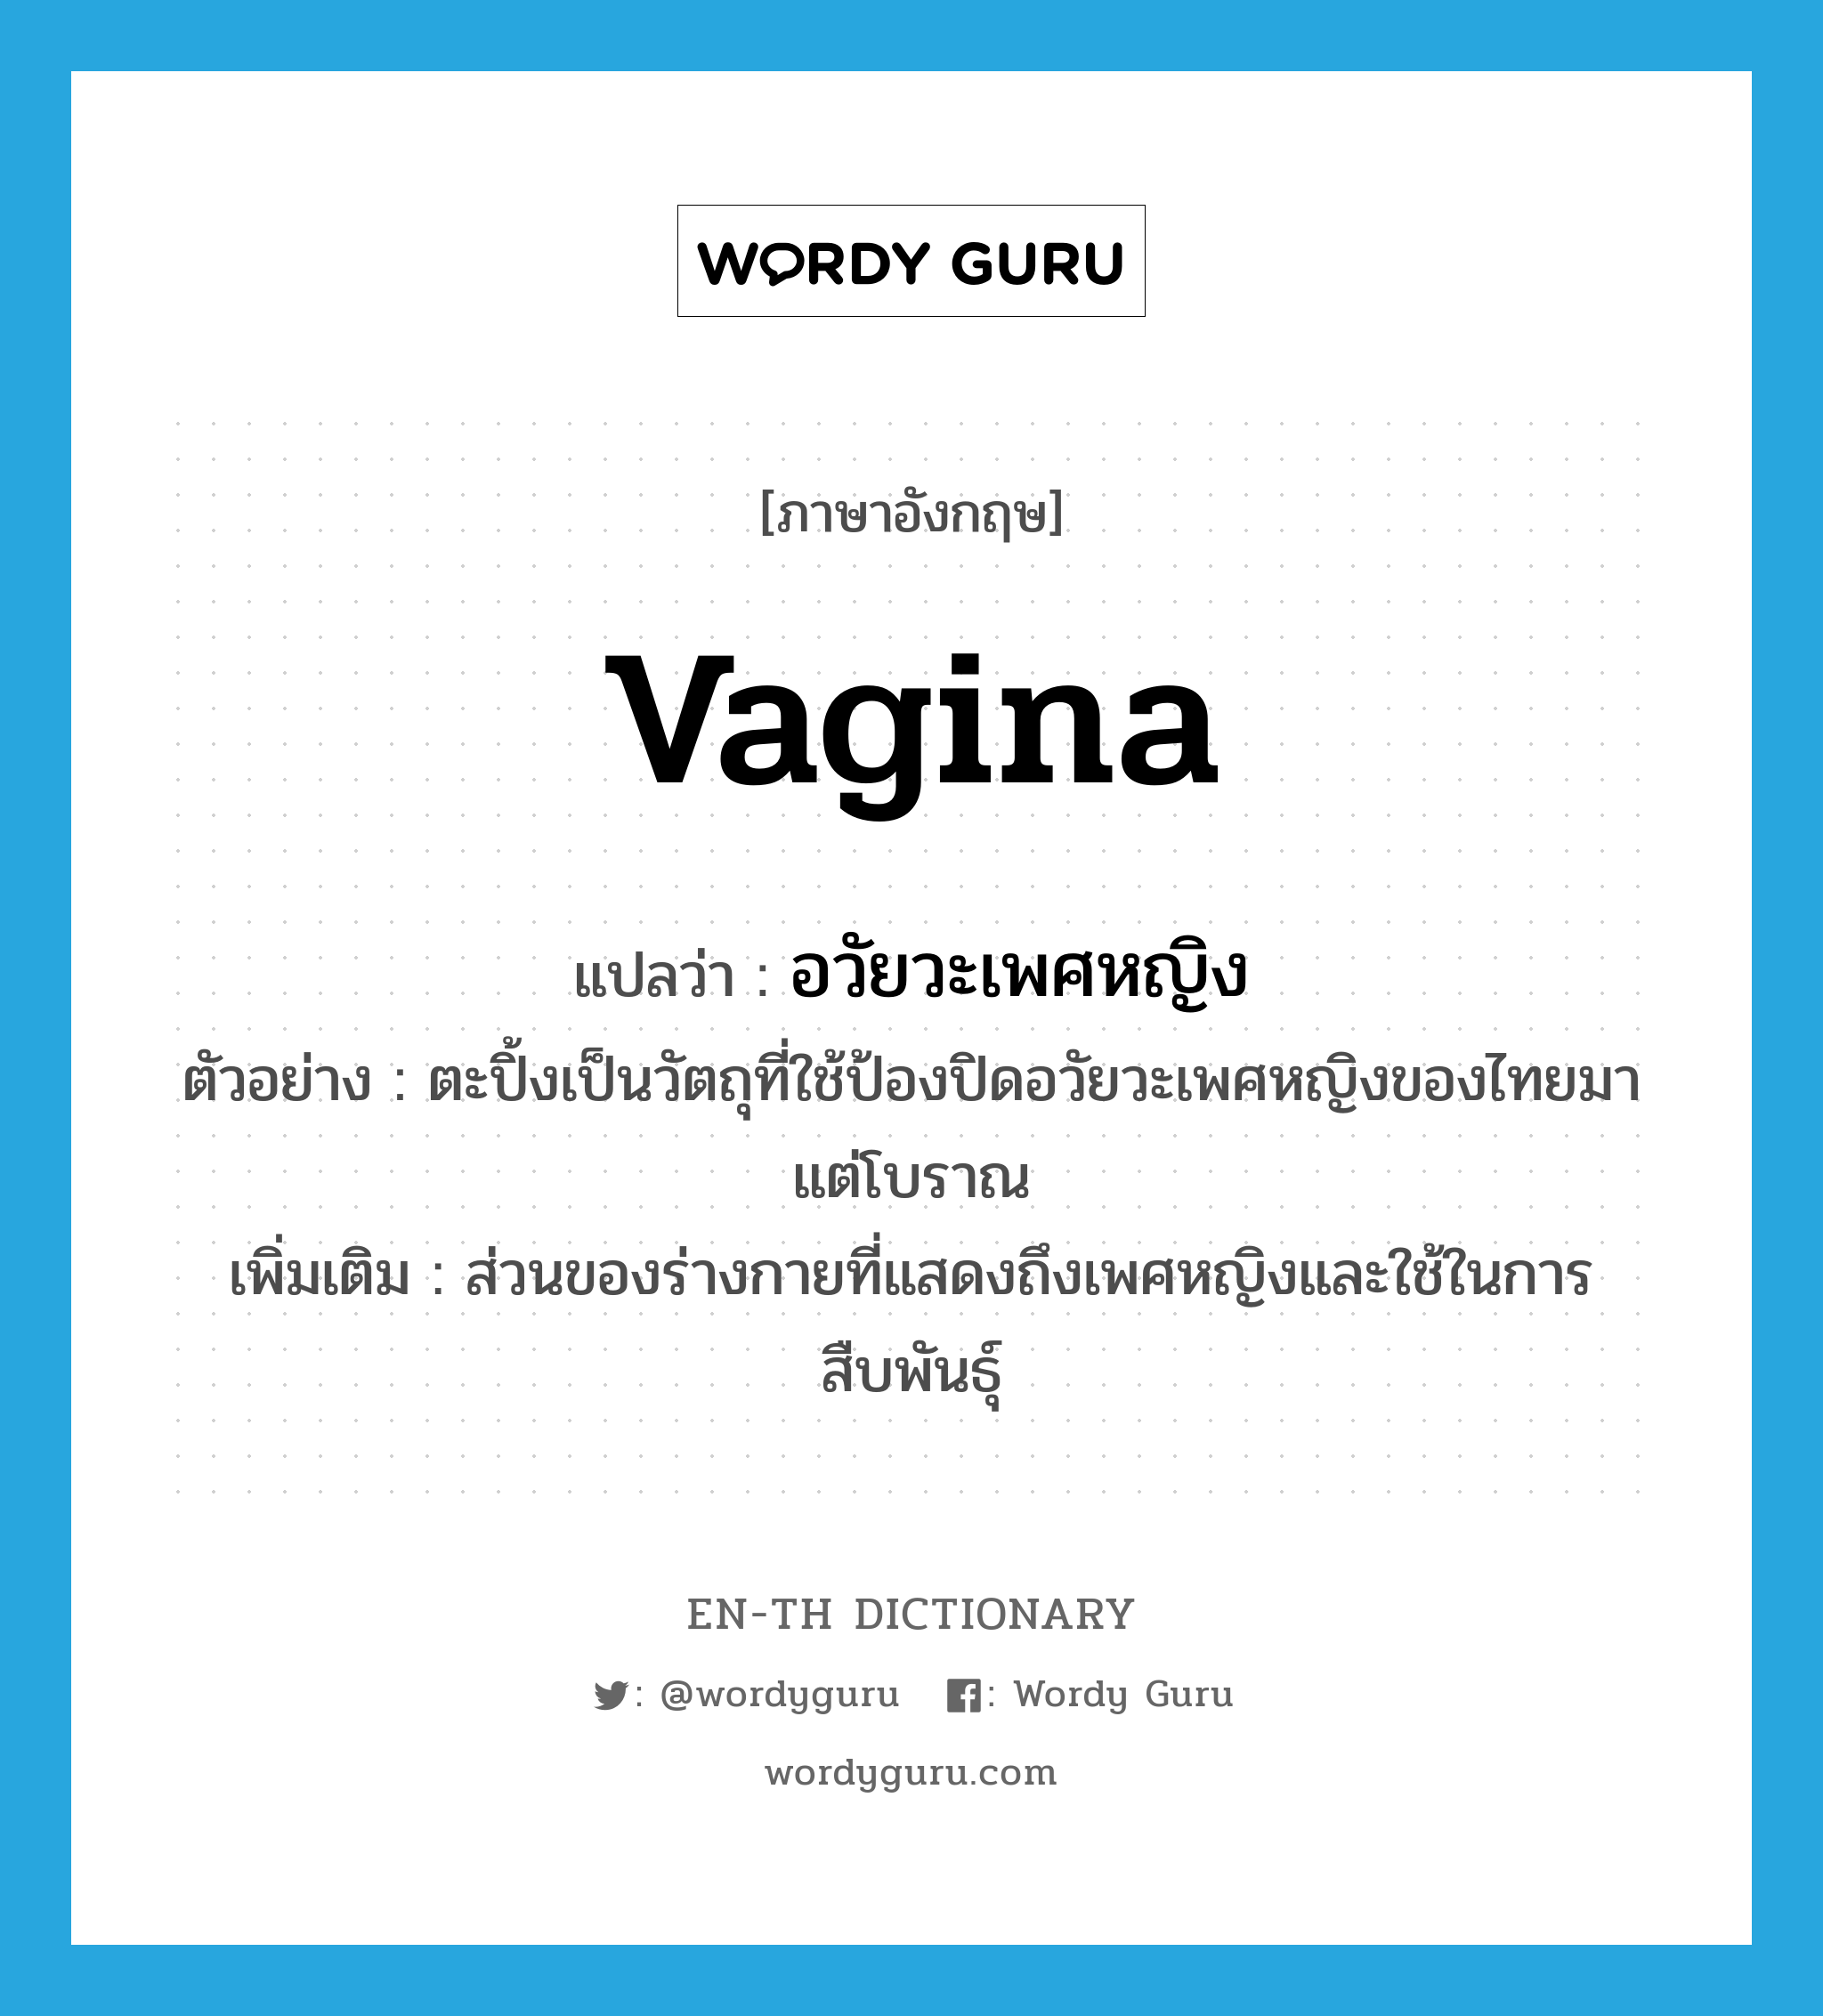 อวัยวะเพศหญิง ภาษาอังกฤษ?, คำศัพท์ภาษาอังกฤษ อวัยวะเพศหญิง แปลว่า vagina ประเภท N ตัวอย่าง ตะปิ้งเป็นวัตถุที่ใช้ป้องปิดอวัยวะเพศหญิงของไทยมาแต่โบราณ เพิ่มเติม ส่วนของร่างกายที่แสดงถึงเพศหญิงและใช้ในการสืบพันธุ์ หมวด N